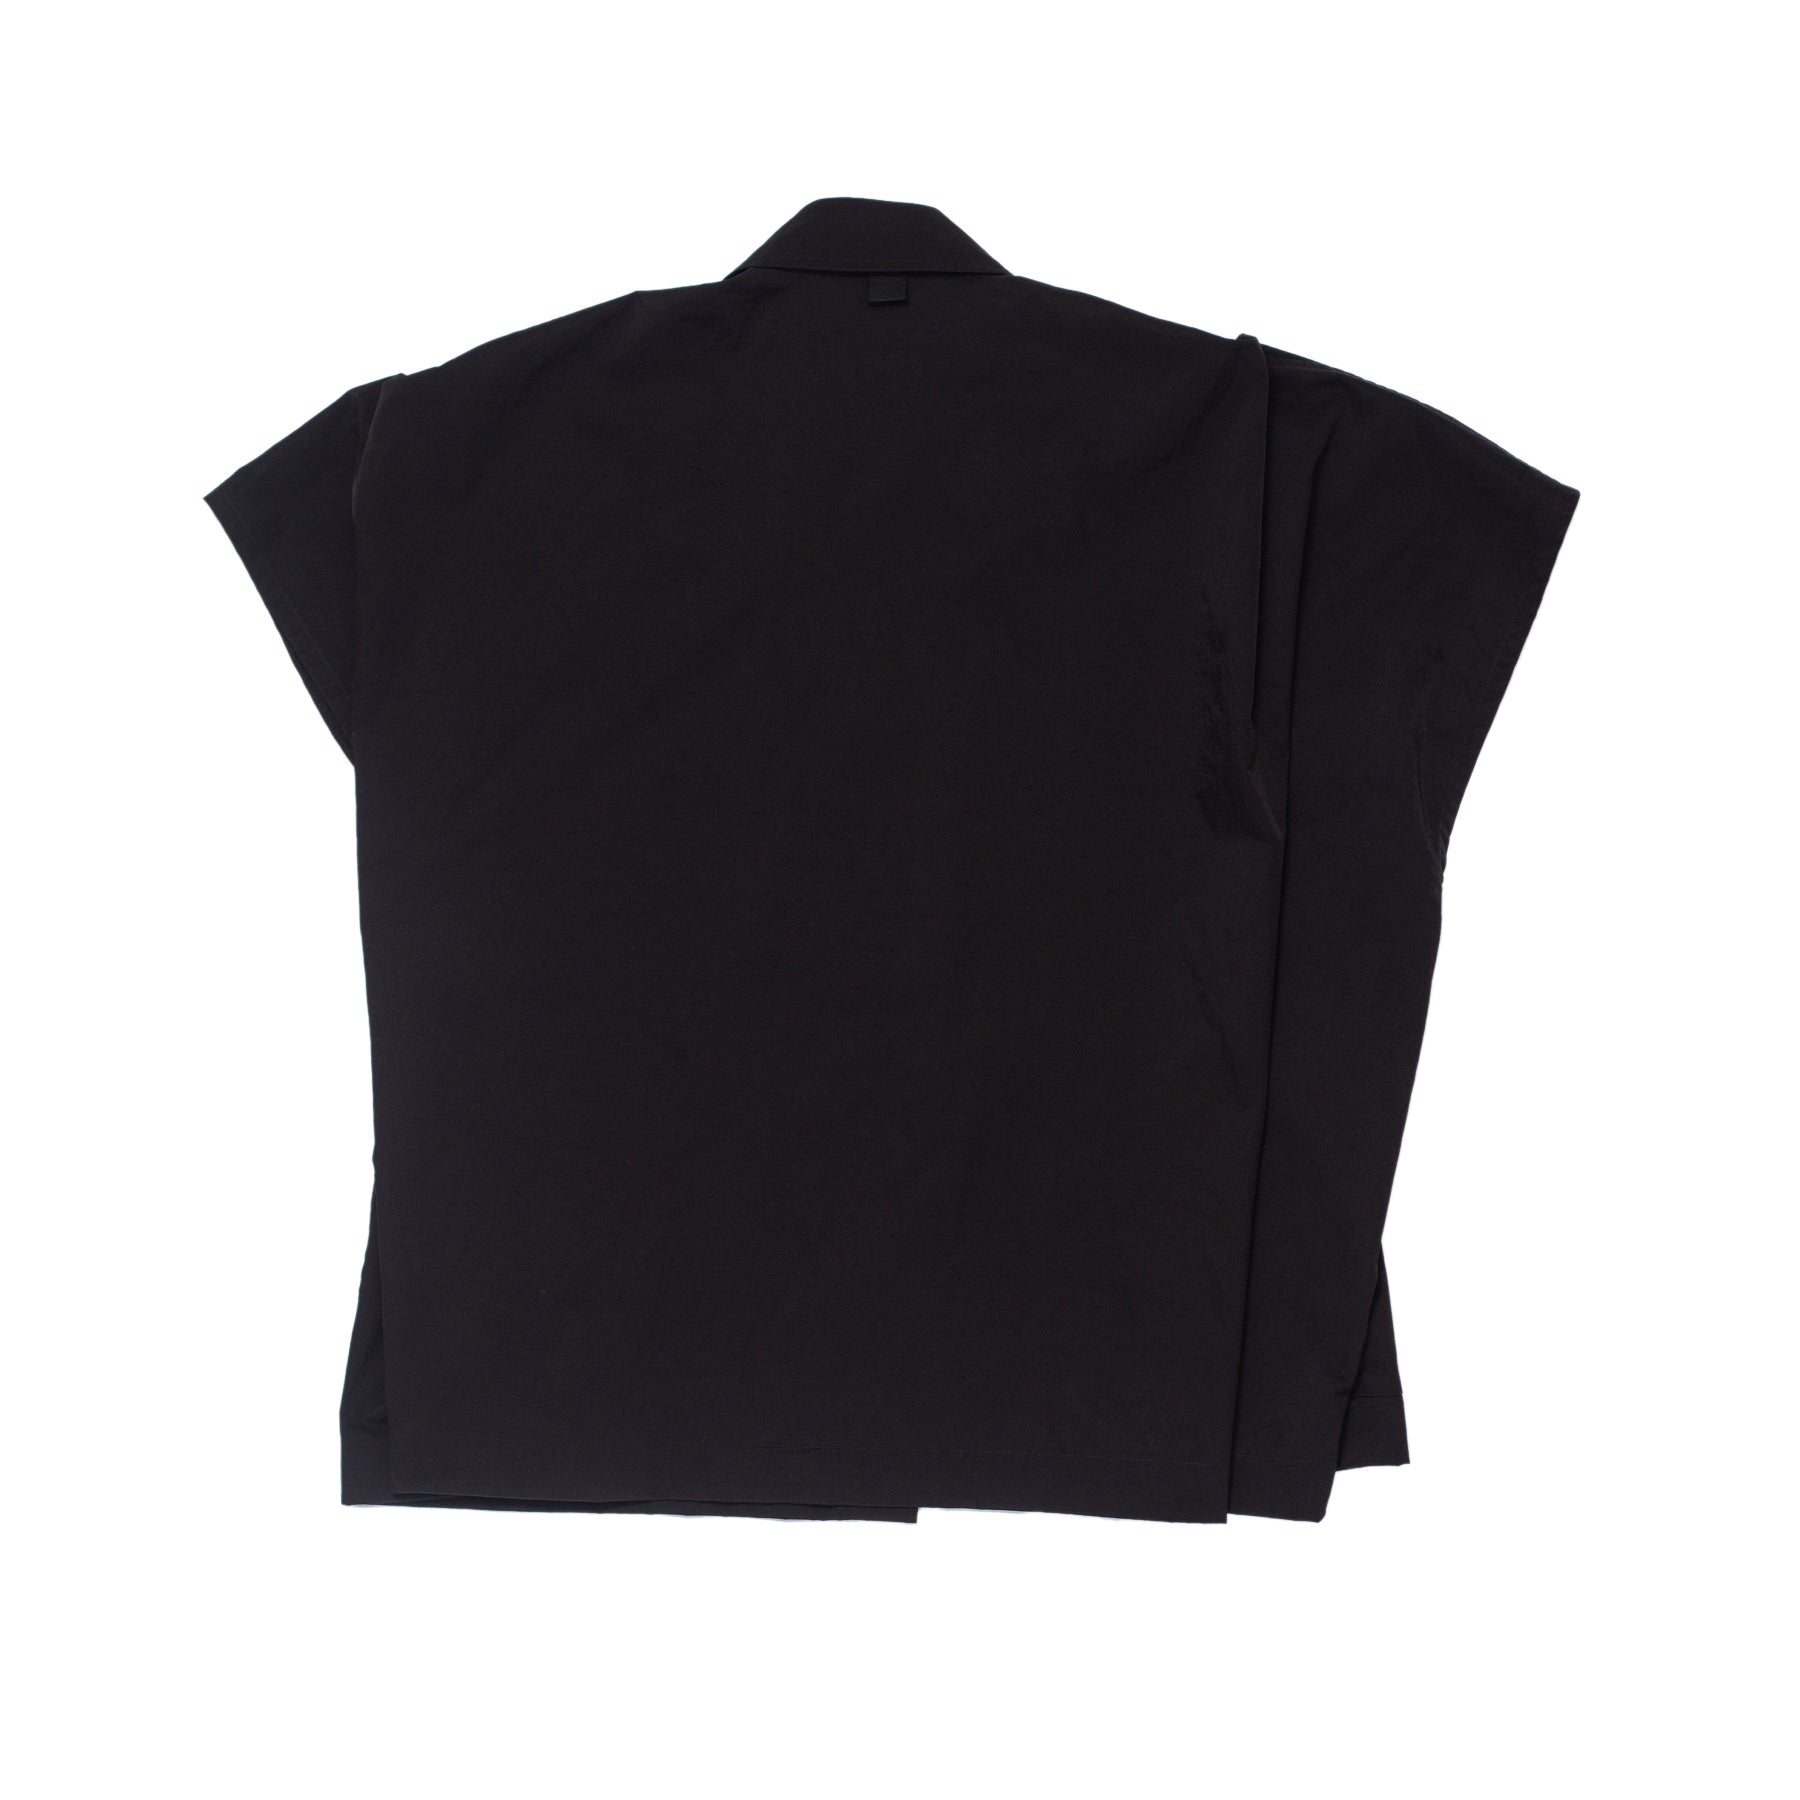 Grei 4 Pocket Shirt Poncho Black